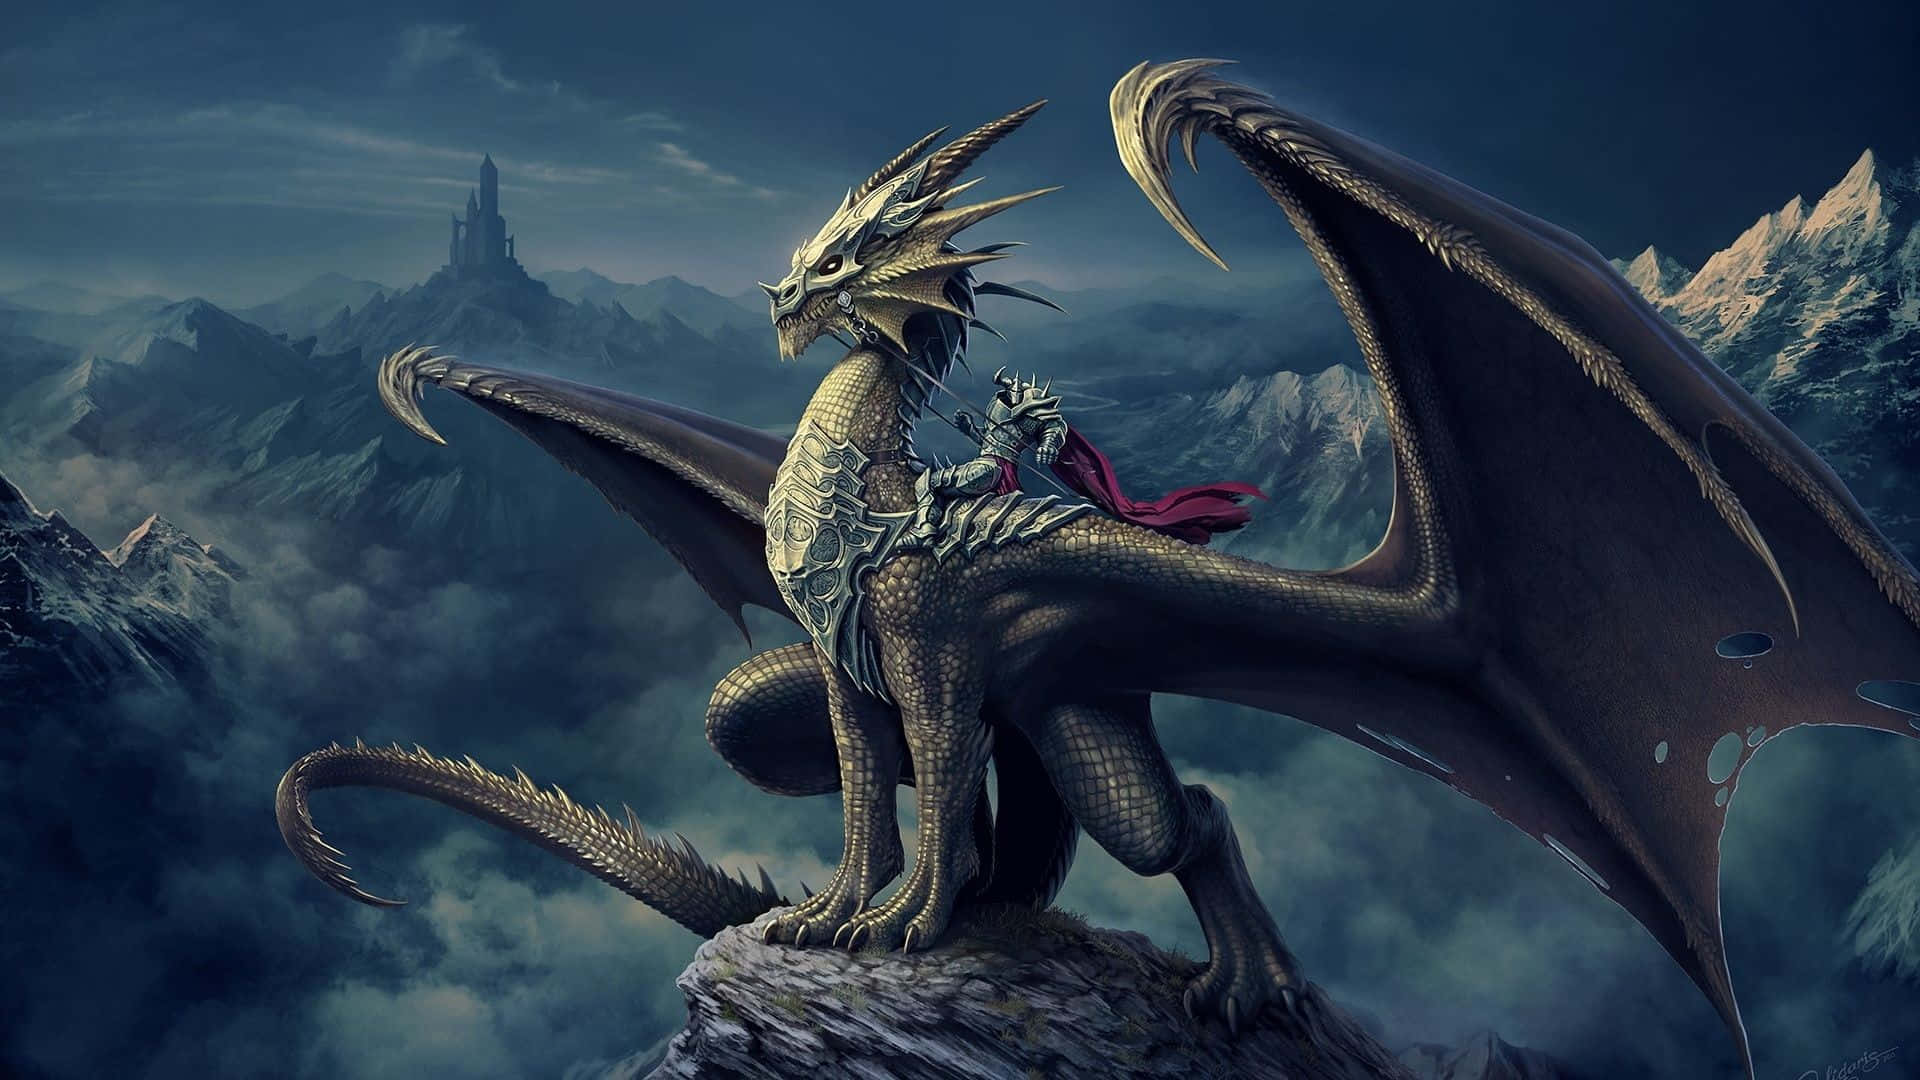 Epic Dragon Observing Wallpaper